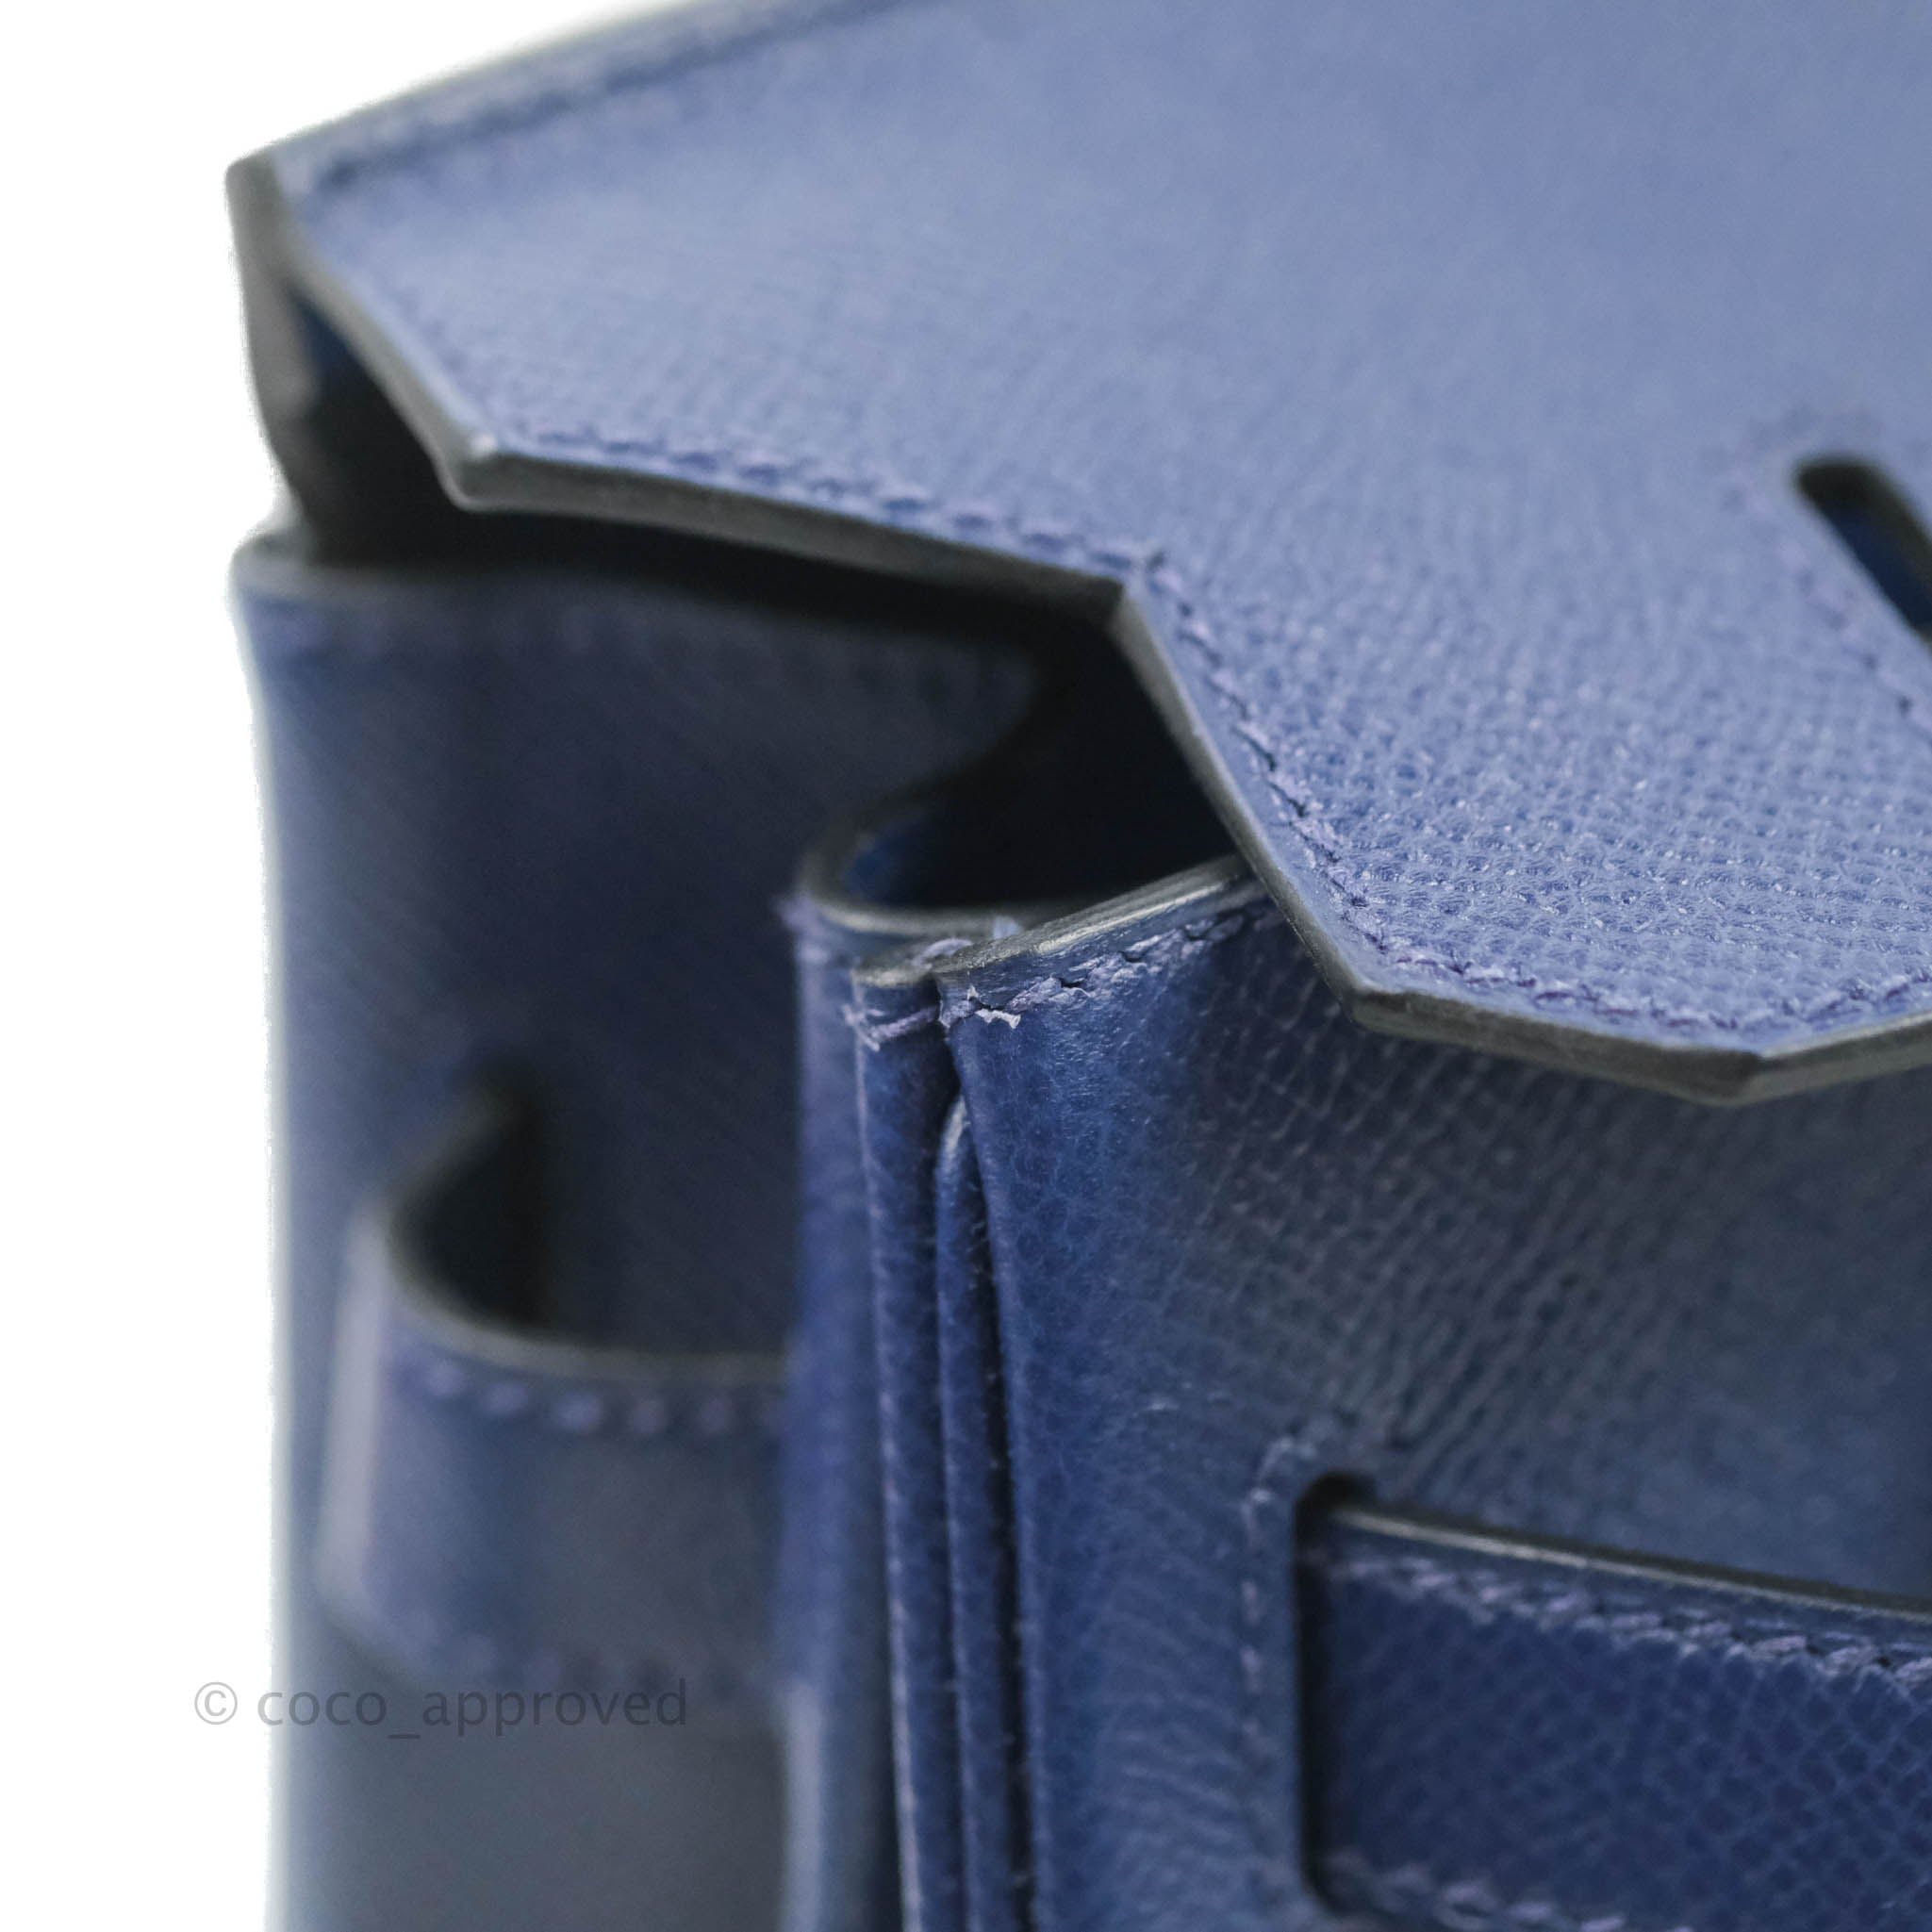 NIB Hermes Birkin 30 cm in Celeste Sky Blue Epsom Leather w Palladium  Hardware 